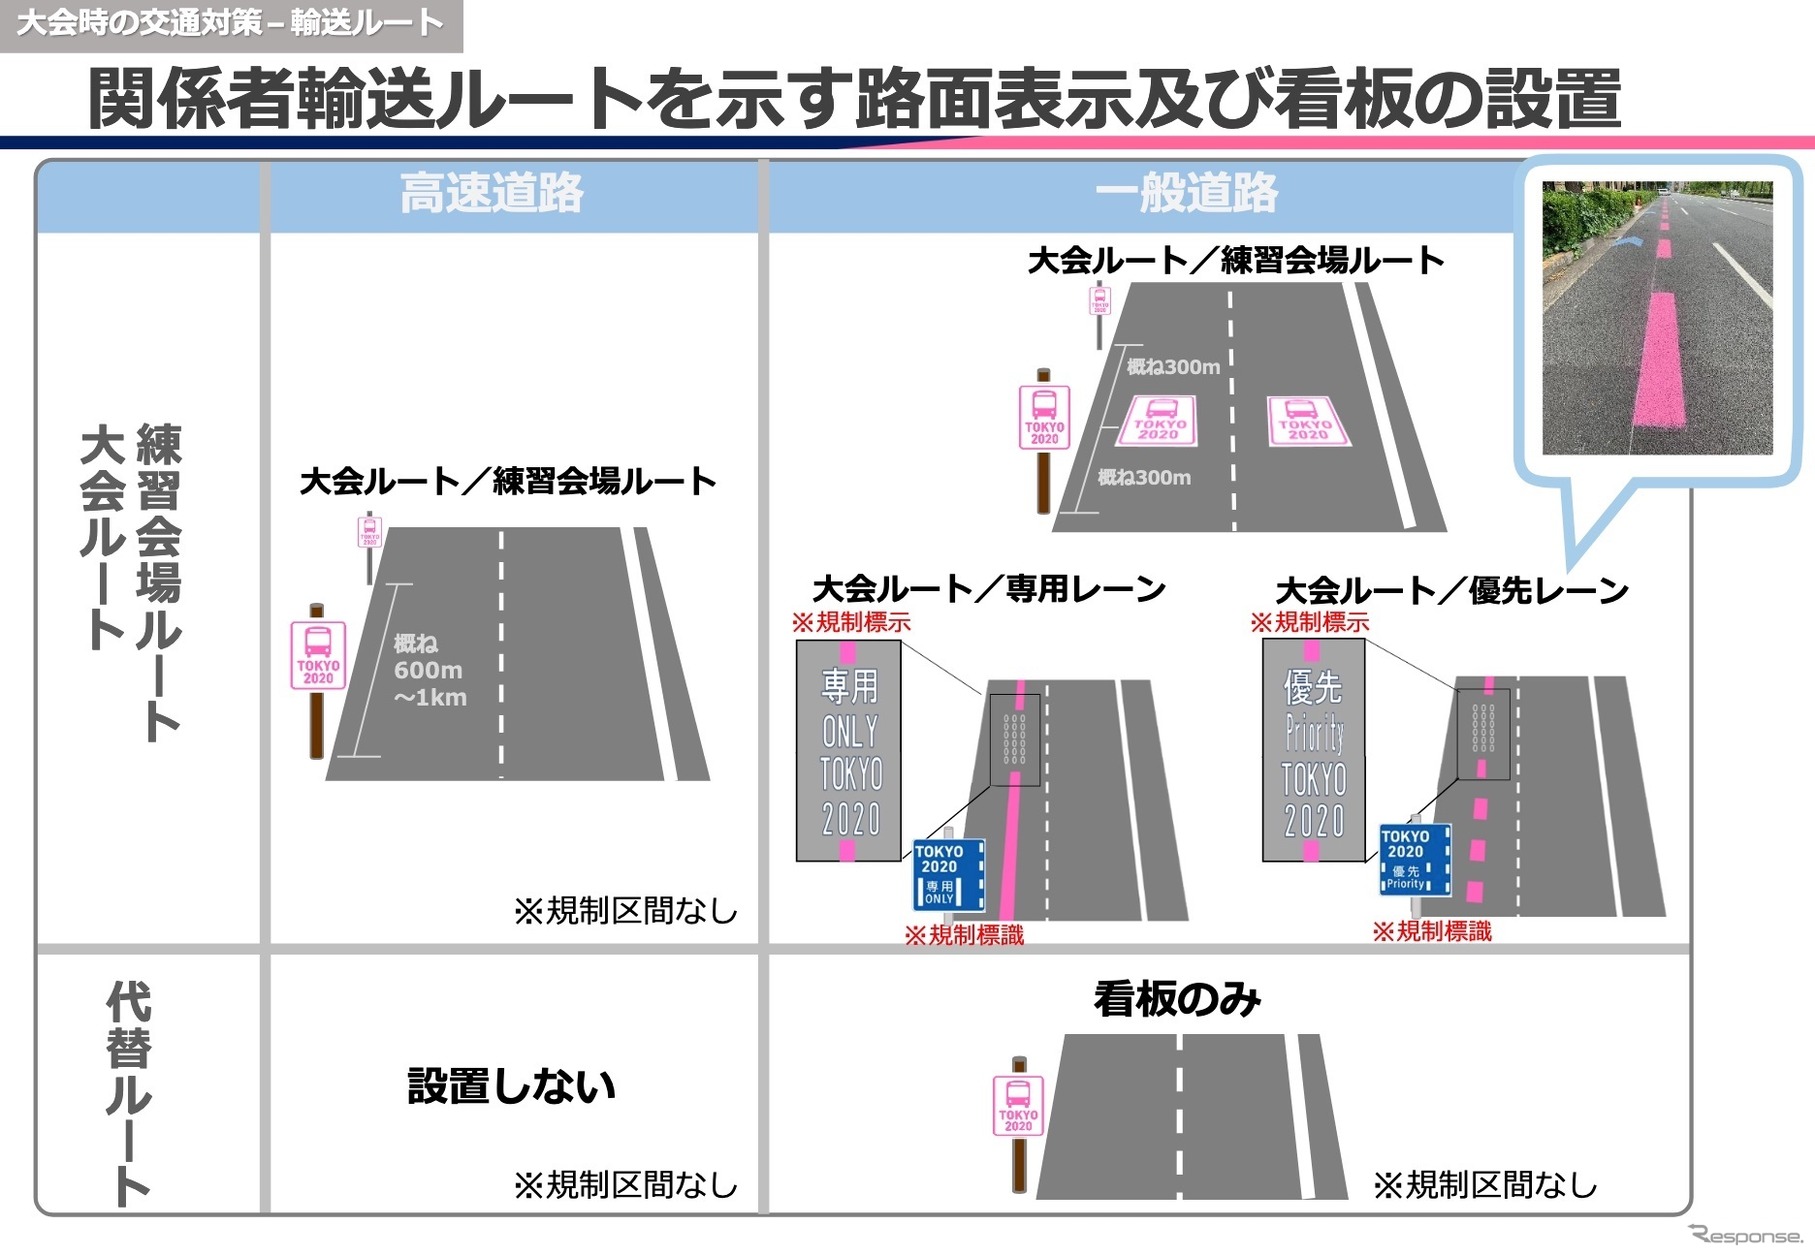 関係者輸送ルートを示す路面表示及び看板の設置